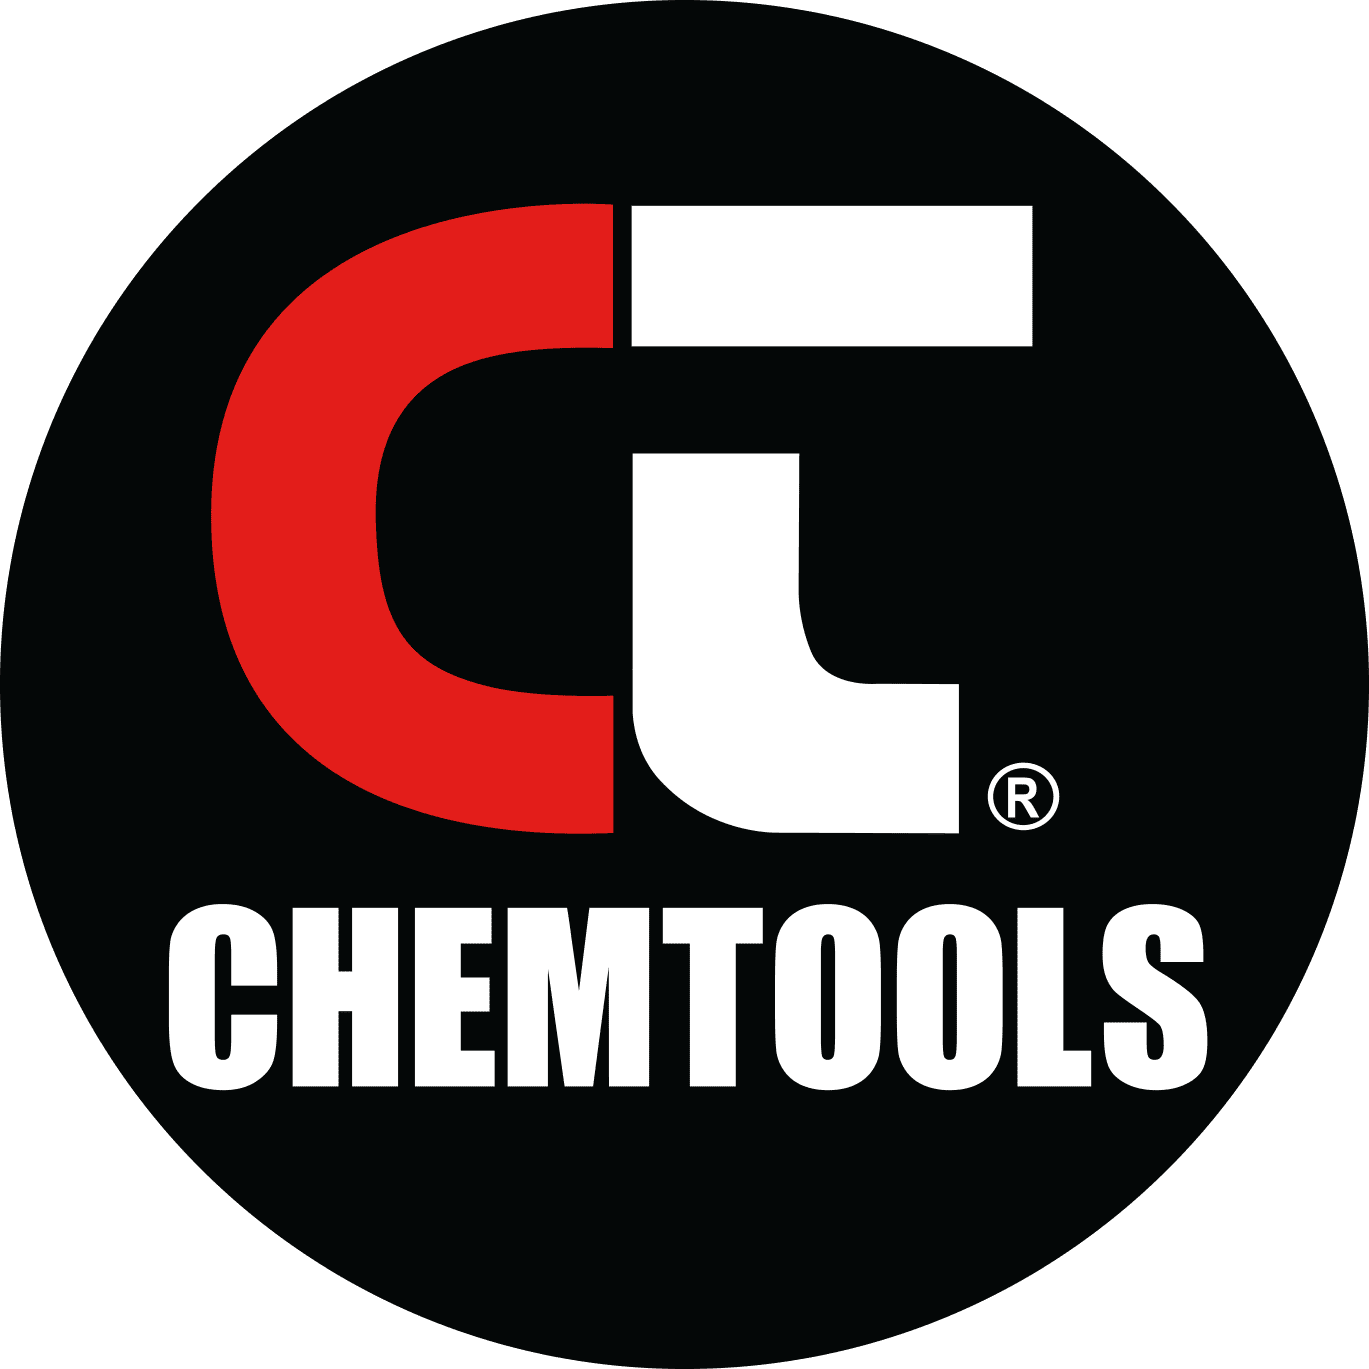 ChemTools